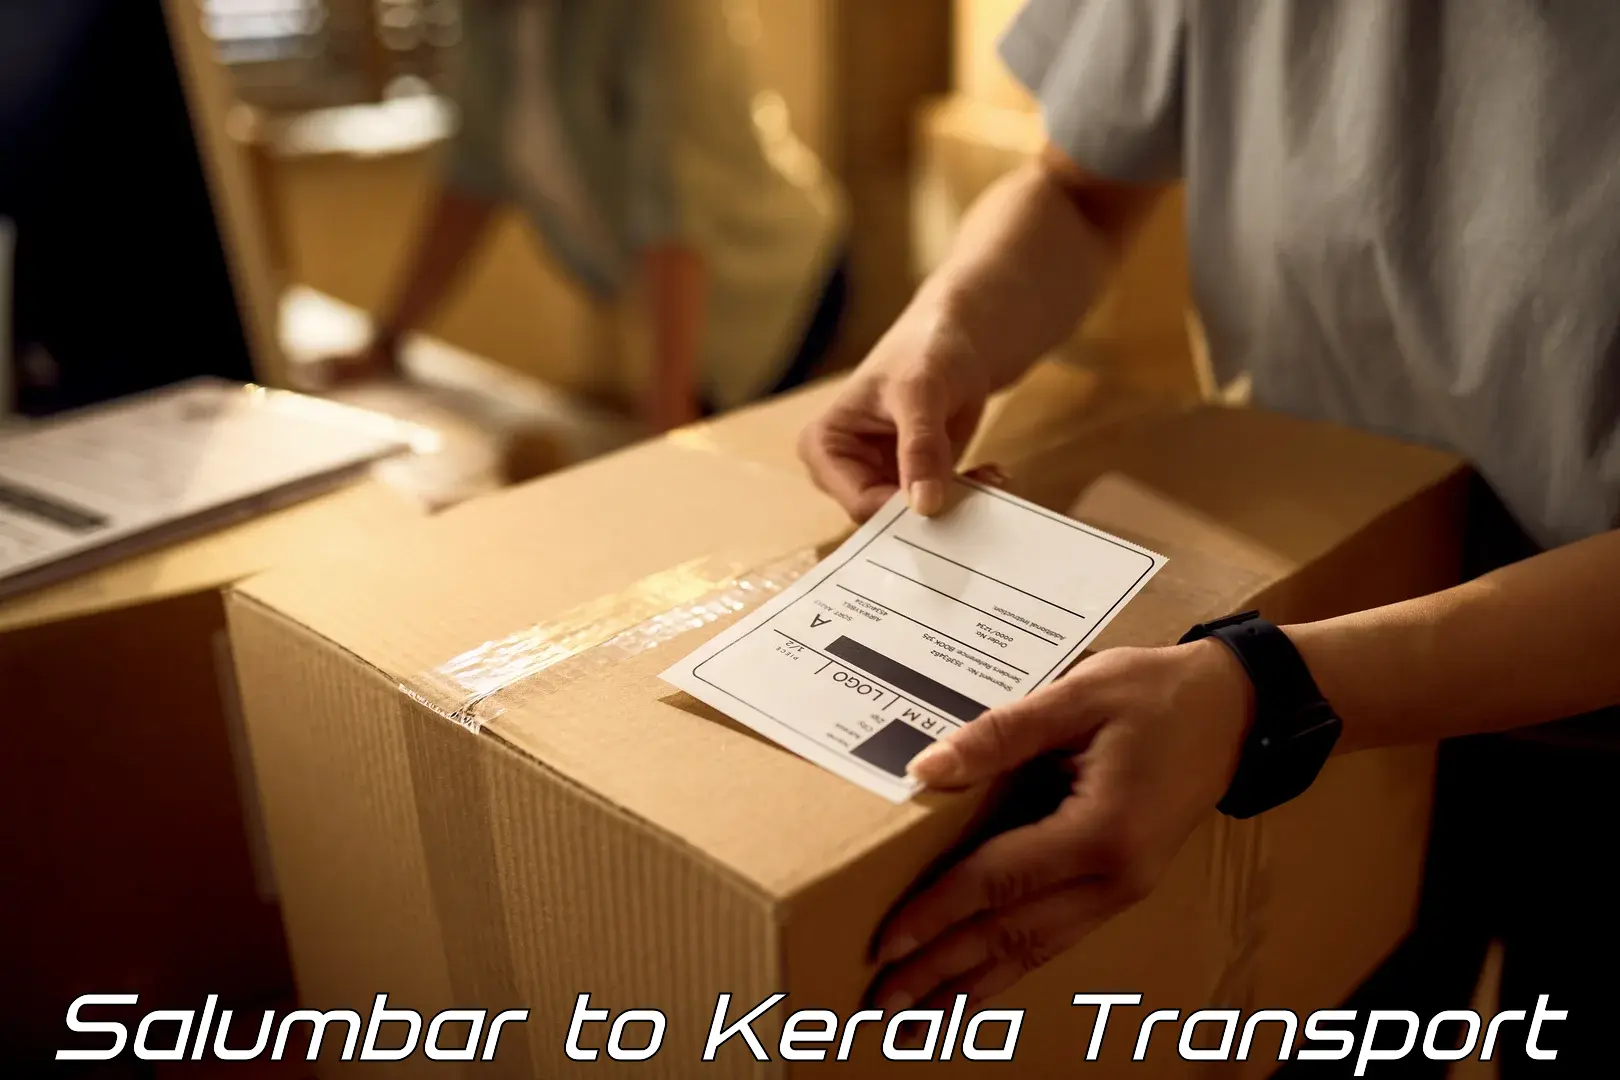 Transportation services in Salumbar to Kerala